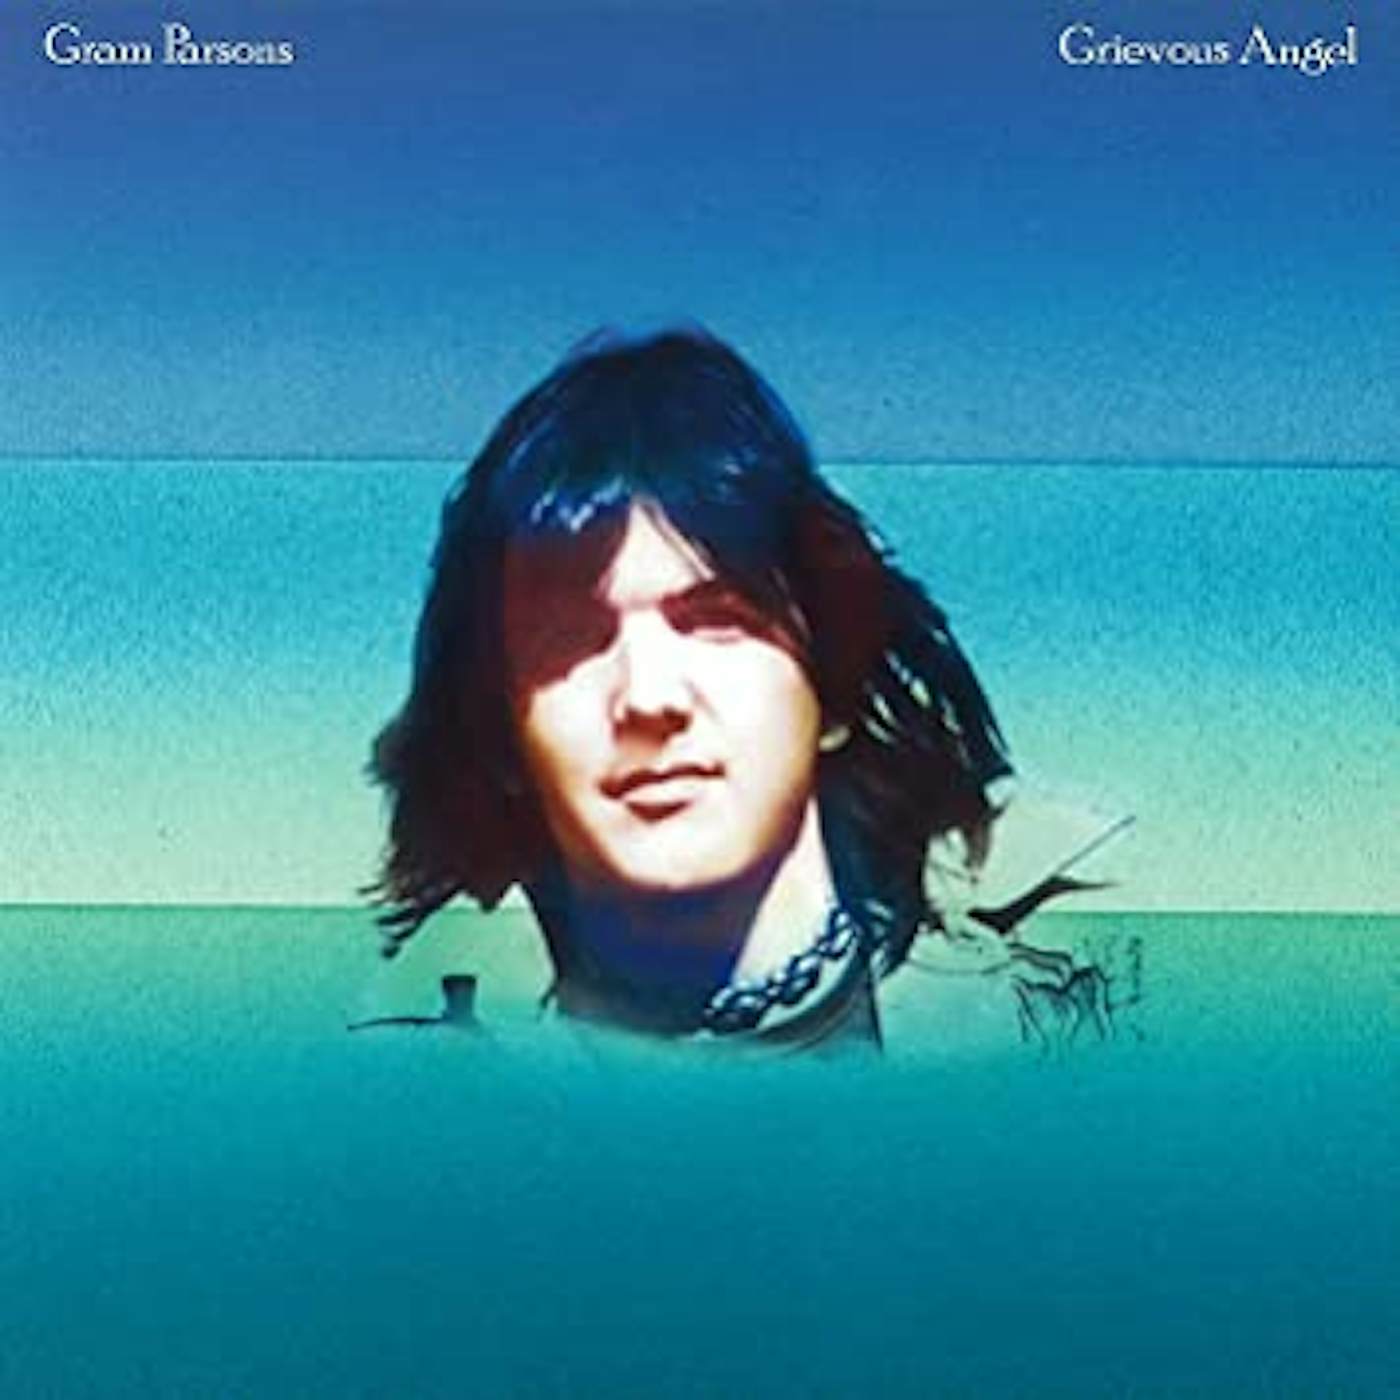 Gram Parsons Grievous Angel Vinyl Record